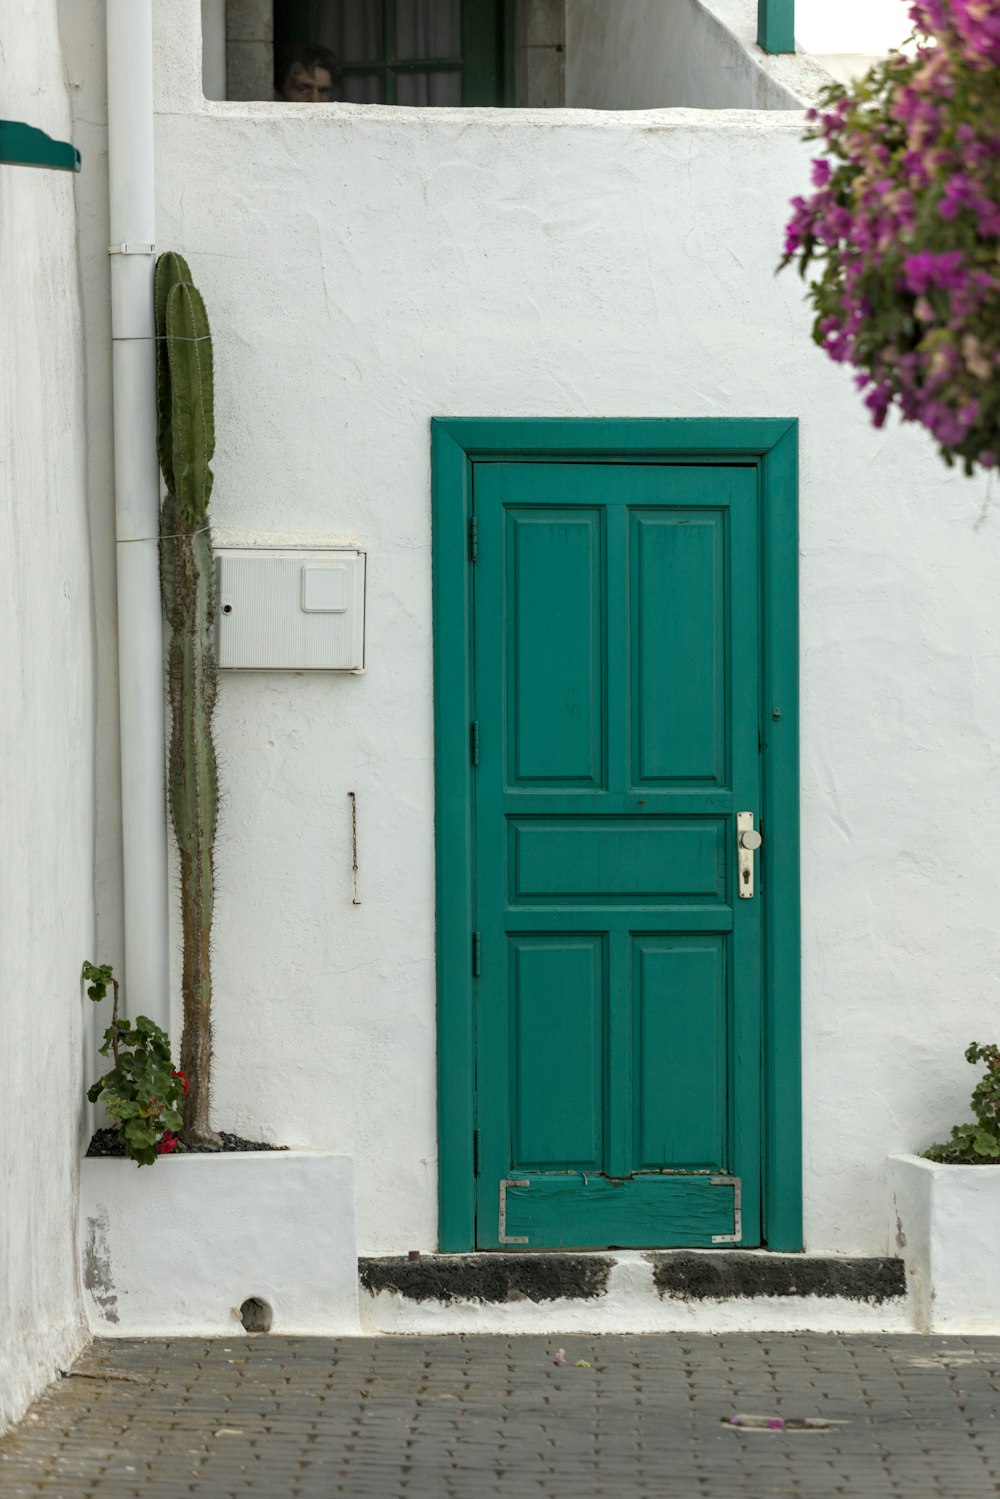 화분에 심은 식물이 있는 흰색 건물의 녹색 문